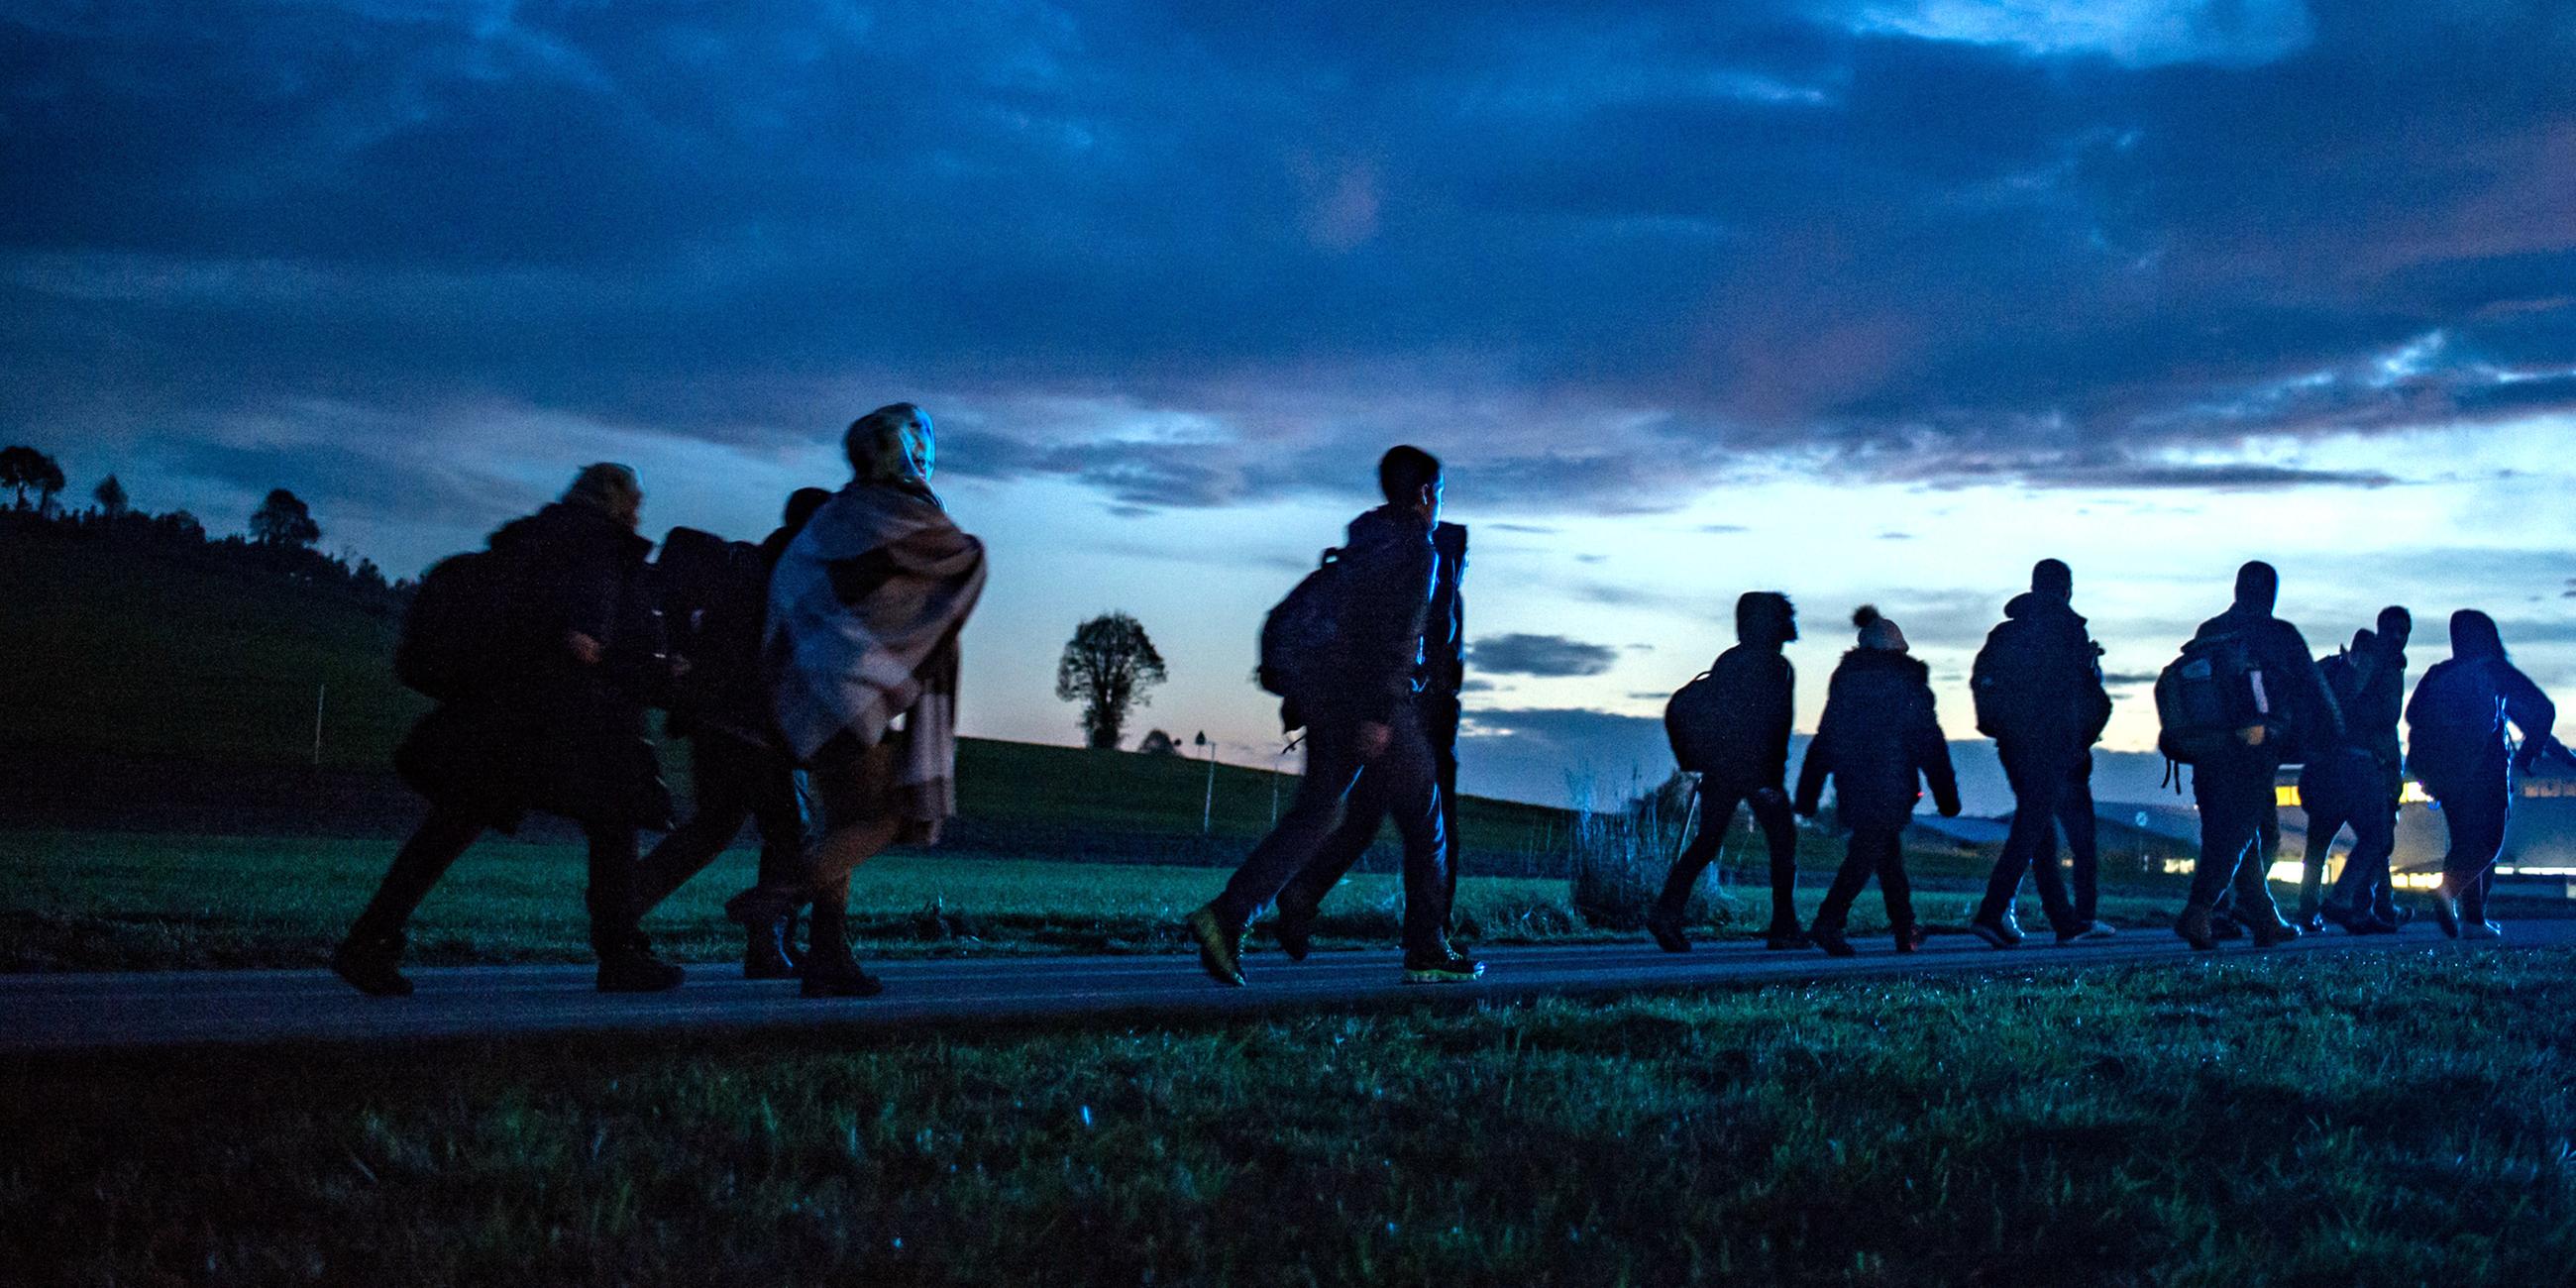 Archiv: Flüchtlinge gehen am 28.10.2015 hinter der deutsch-österreichischen Grenze in Wegscheid (Bayern) zu einer Notunterkunft